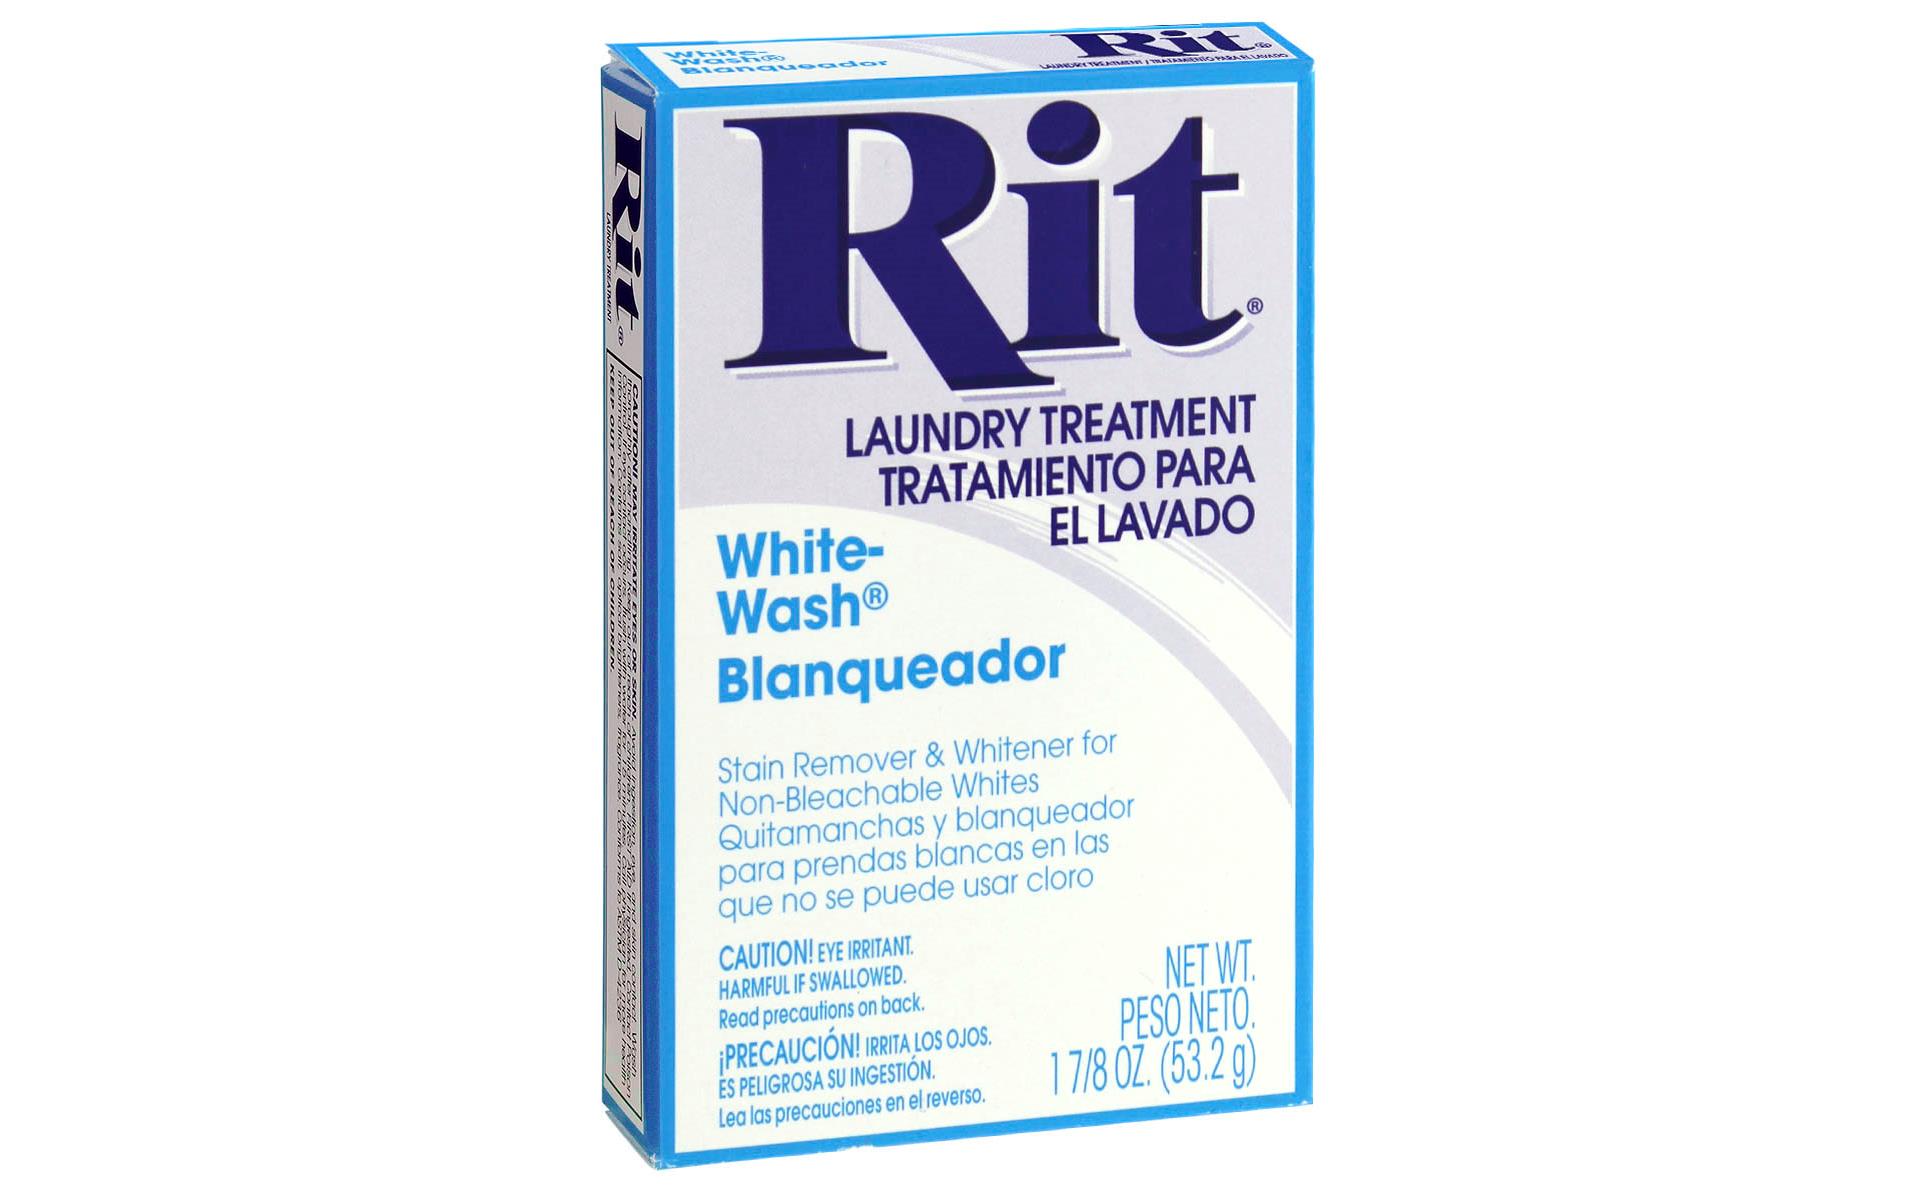 Rit Dye Powder 1 7/8oz White Wash | eBay